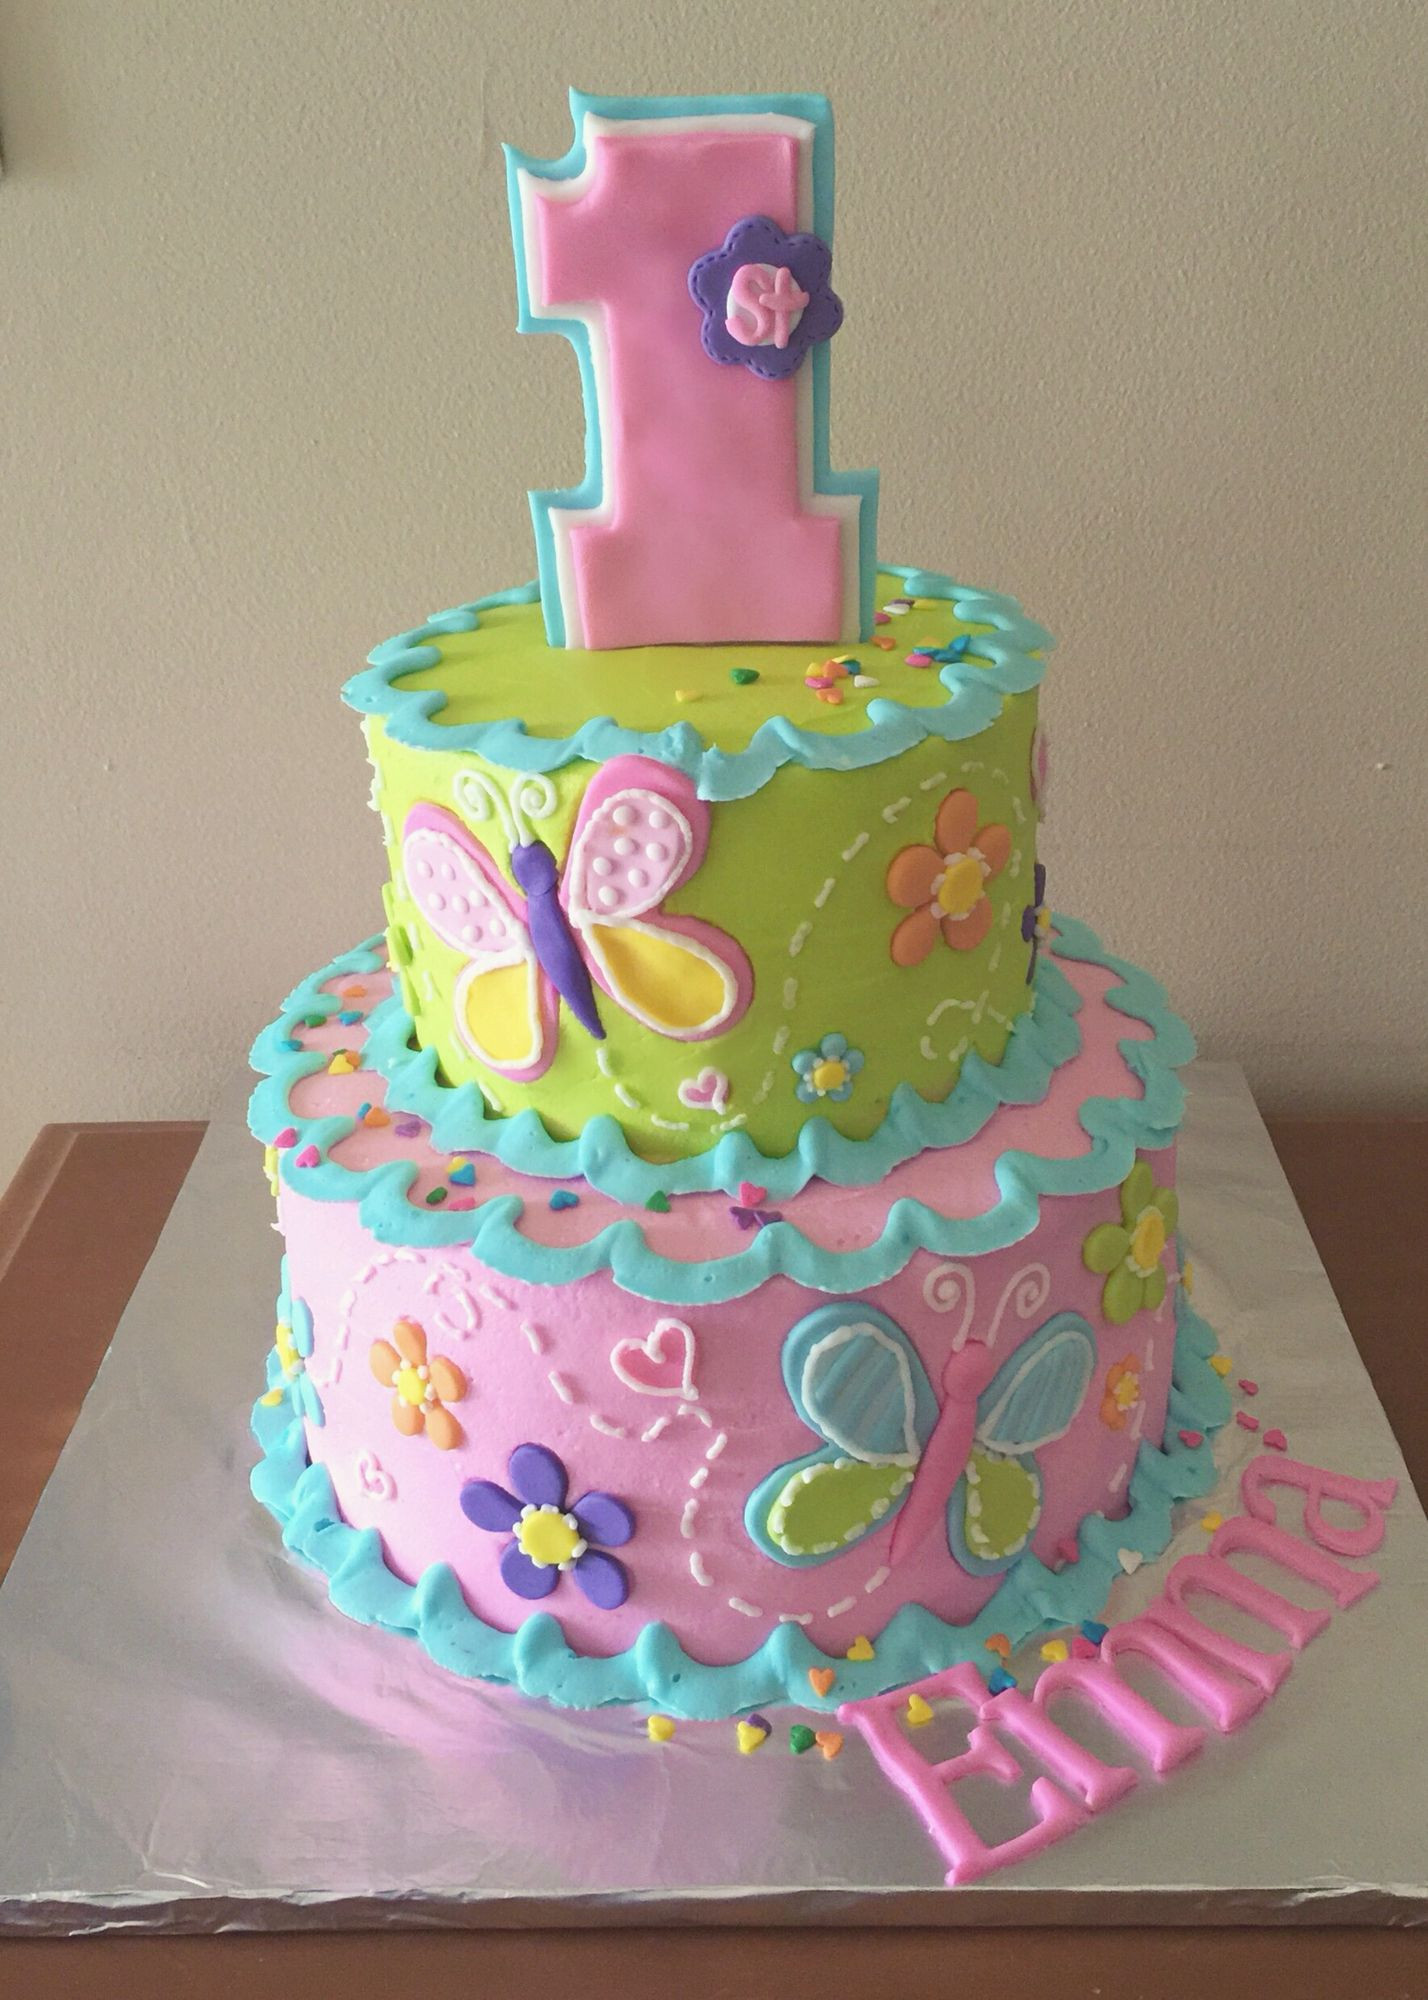 1st Birthday Cake Girl
 1st birthday cake for a girl